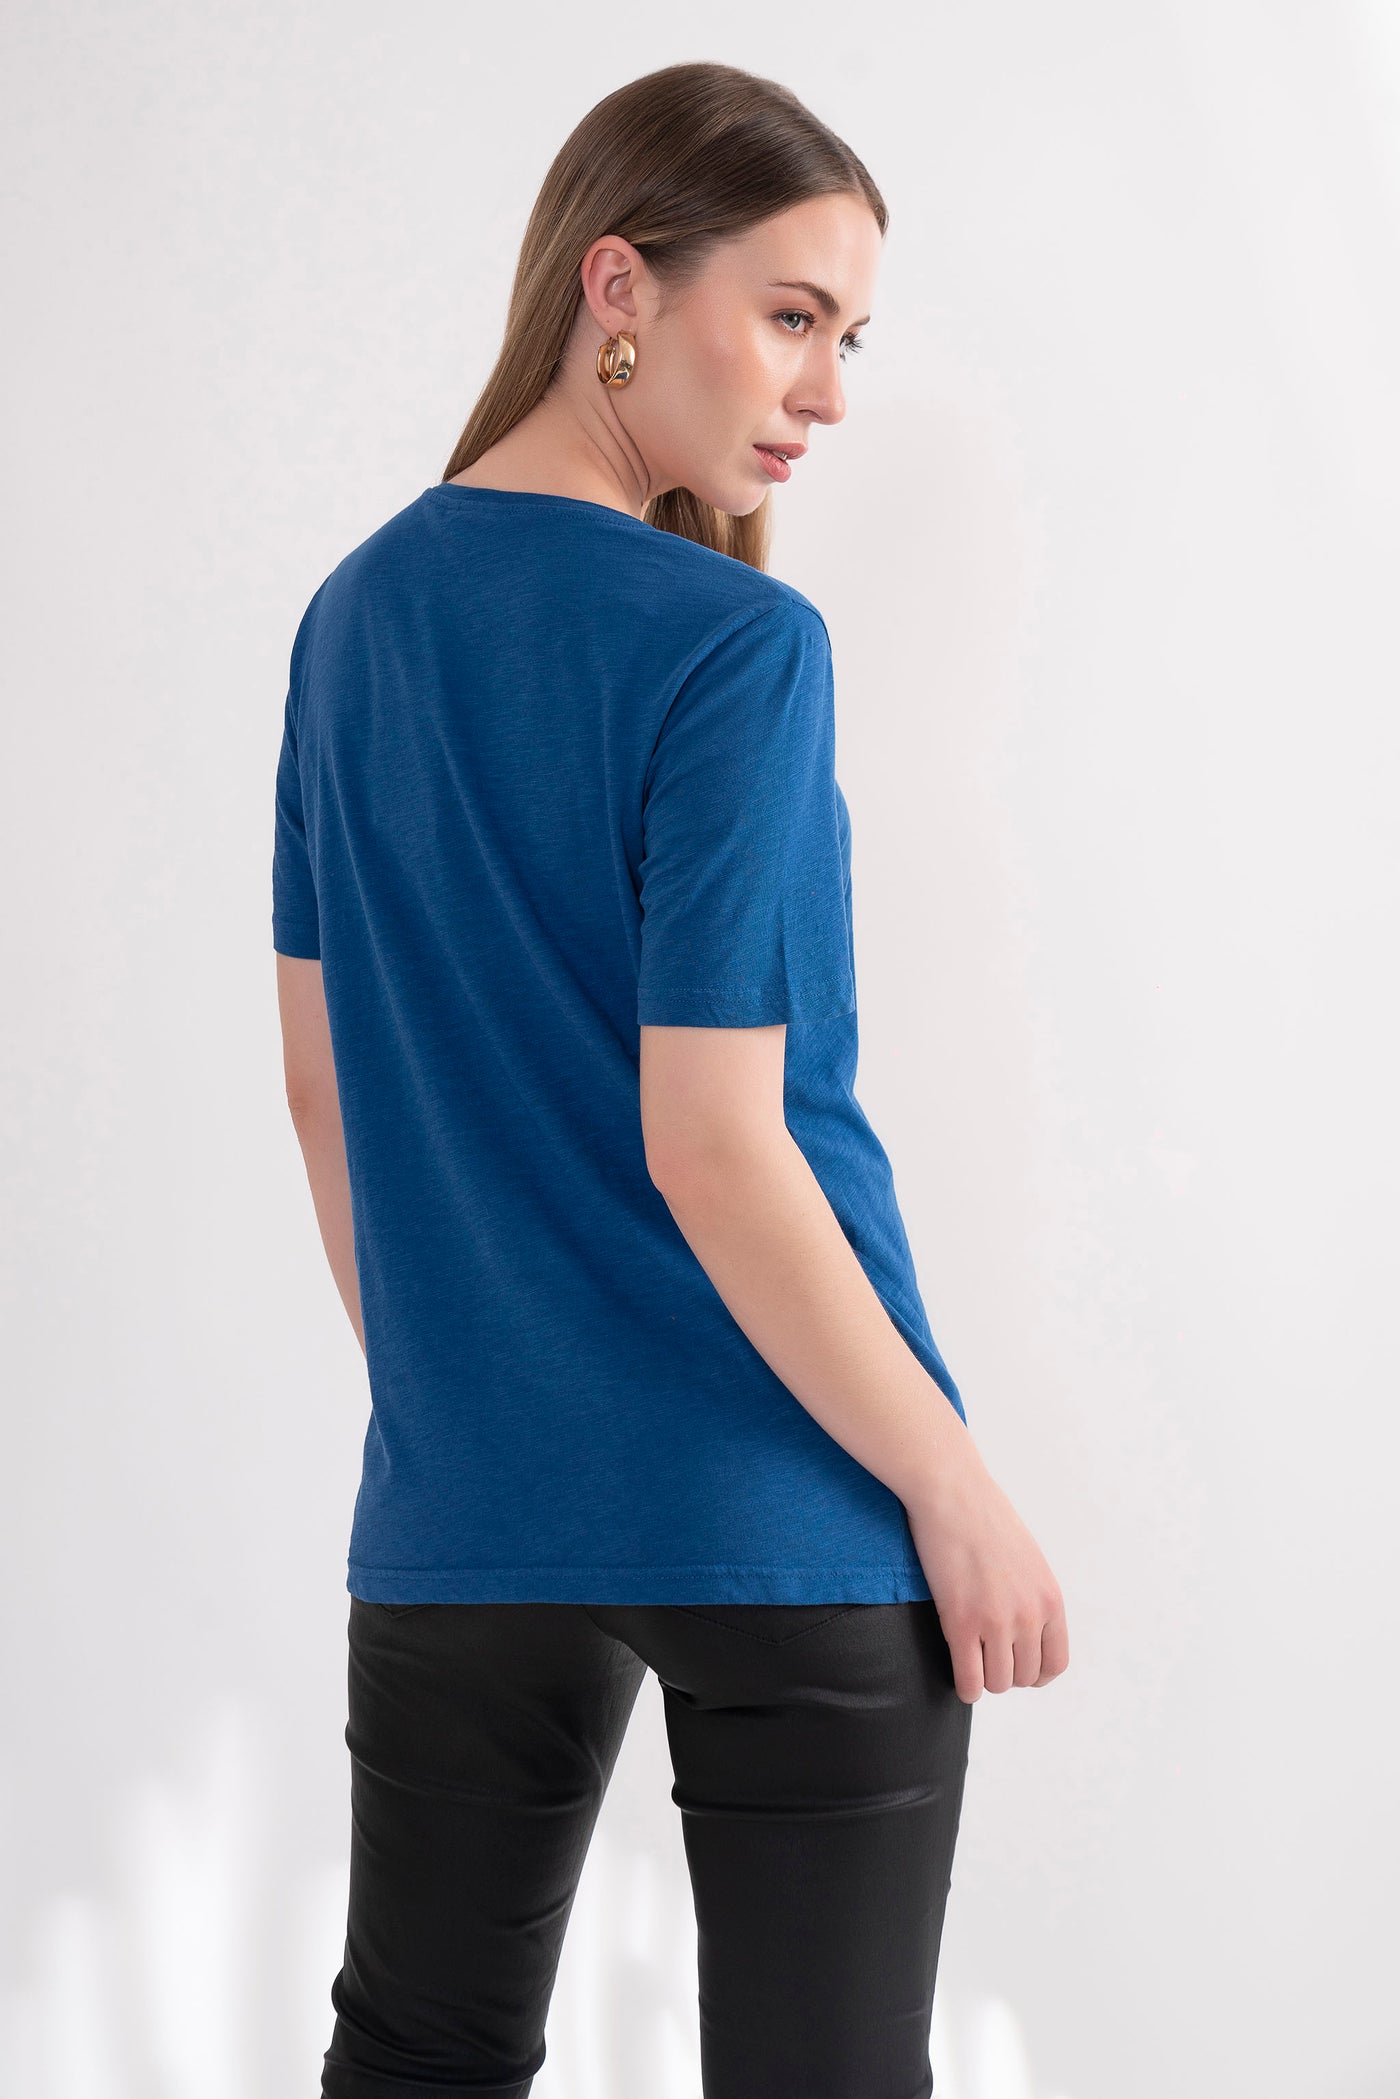 Galaxy Blue Short Sleeve T-shirt